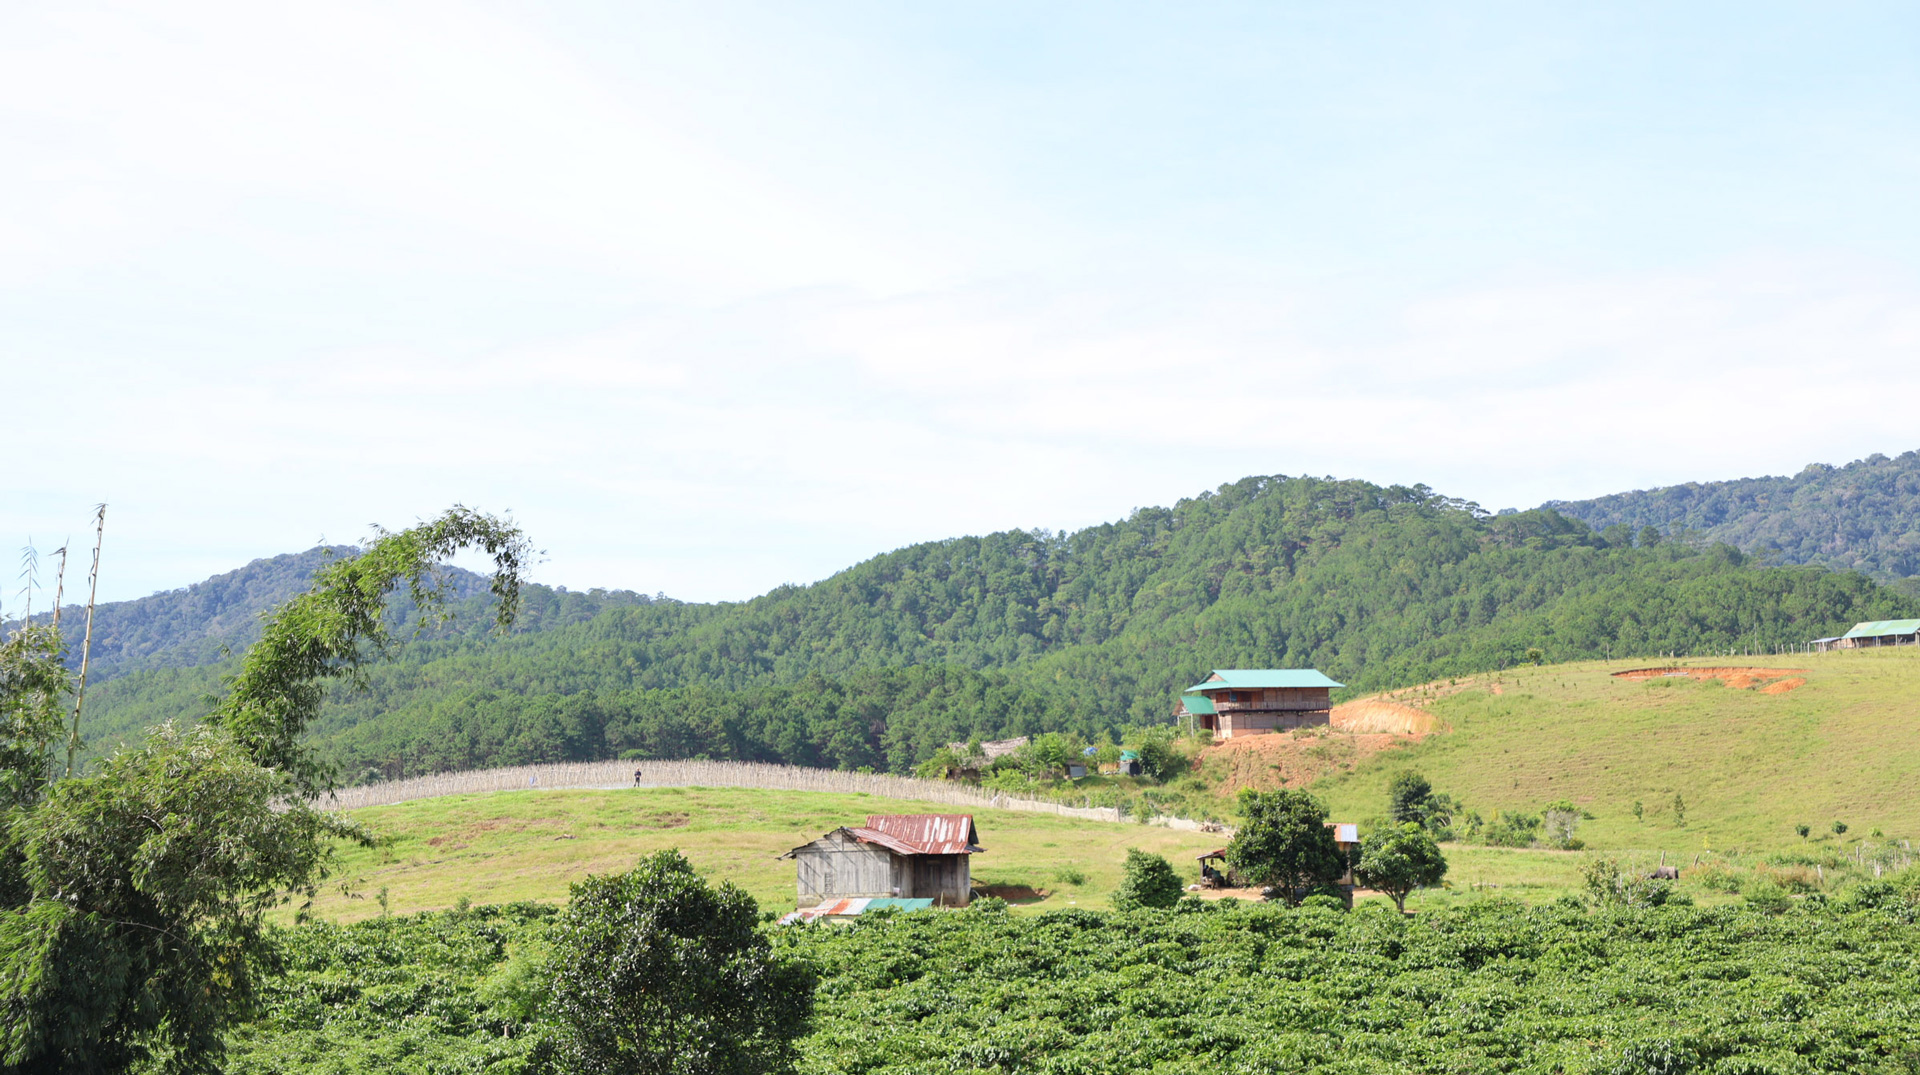 Xã Đa Quyn có hơn 1.000 hộ dân với trên 80% là đồng bào dân tộc thiểu số Churu và K’Ho với thu nhập chính từ trồng cà phê và lúa nước. Vì vậy, với mật độ dân số chỉ khoảng 25 người/km2, thì ra khỏi trung tâm Đa Quyn chỉ có rừng thông, ruộng lúa, vườn cà phê, thỉnh thoảng cũng có những vườn rau xanh… 